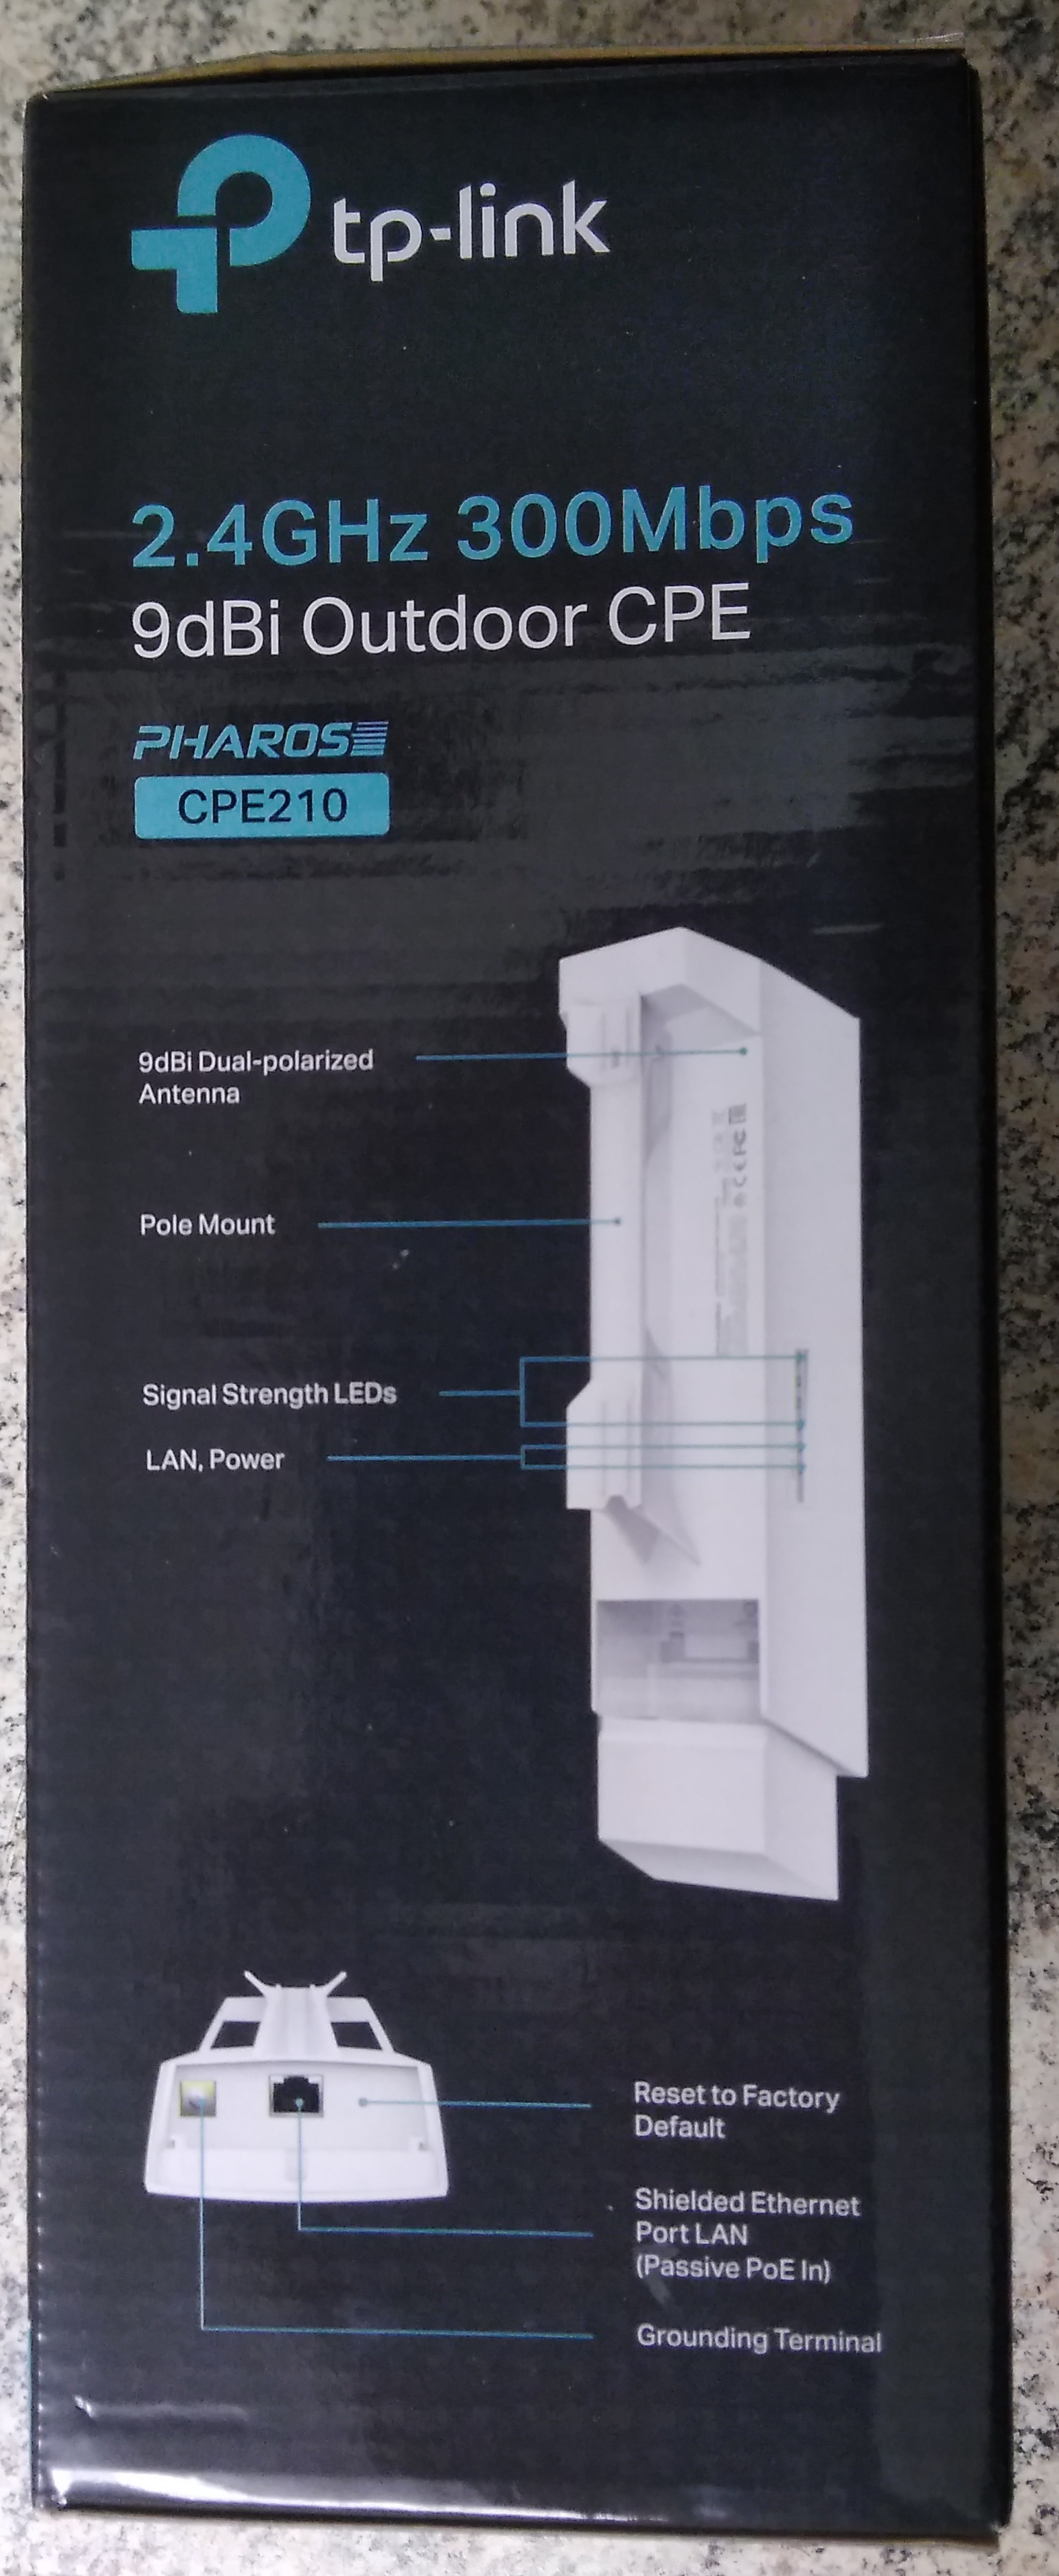 Eindeutiges Indiez das es sich bei einem TP-Link CPE210 um V3 handelt, auf der Seite der Schachtel sieht man ein Abbild nur einer Ethernet-Schnittstelle